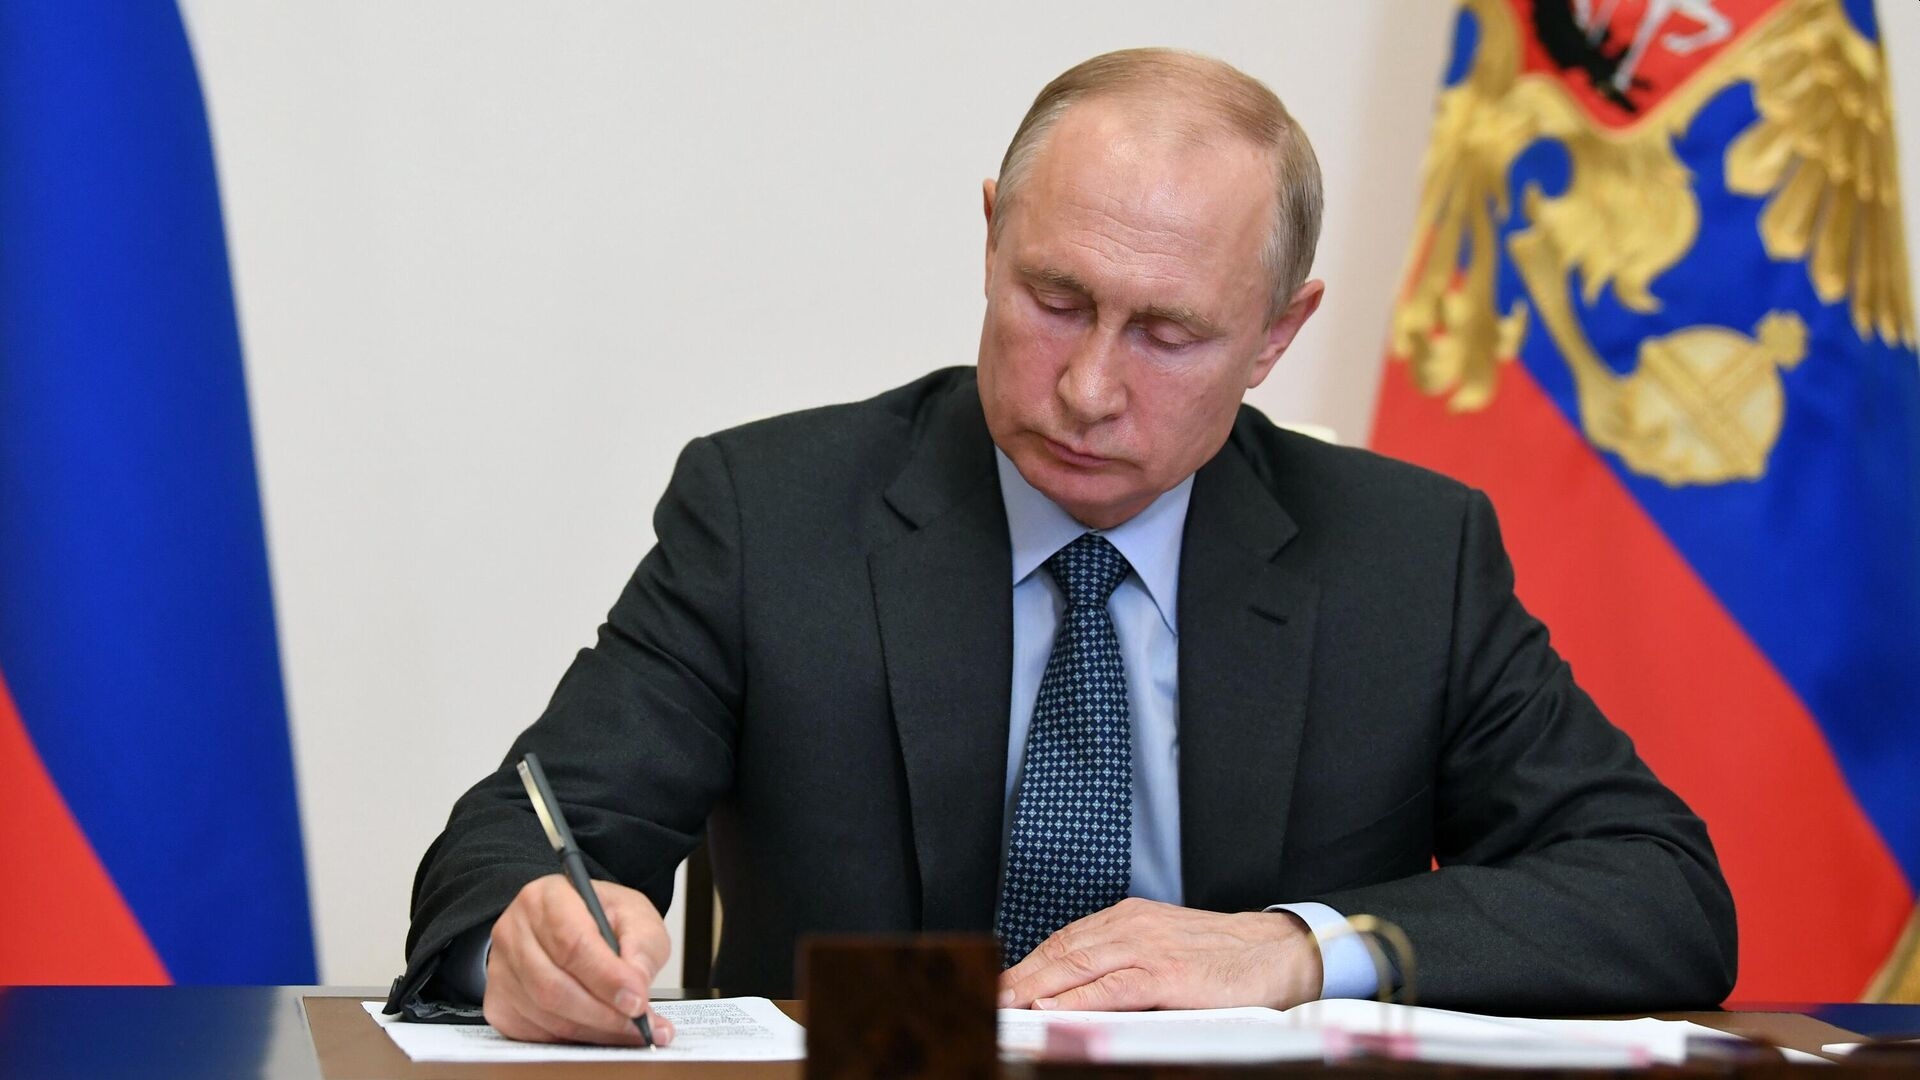 Косачев сообщил, что Путину представят предложения по денонсации международных соглашений